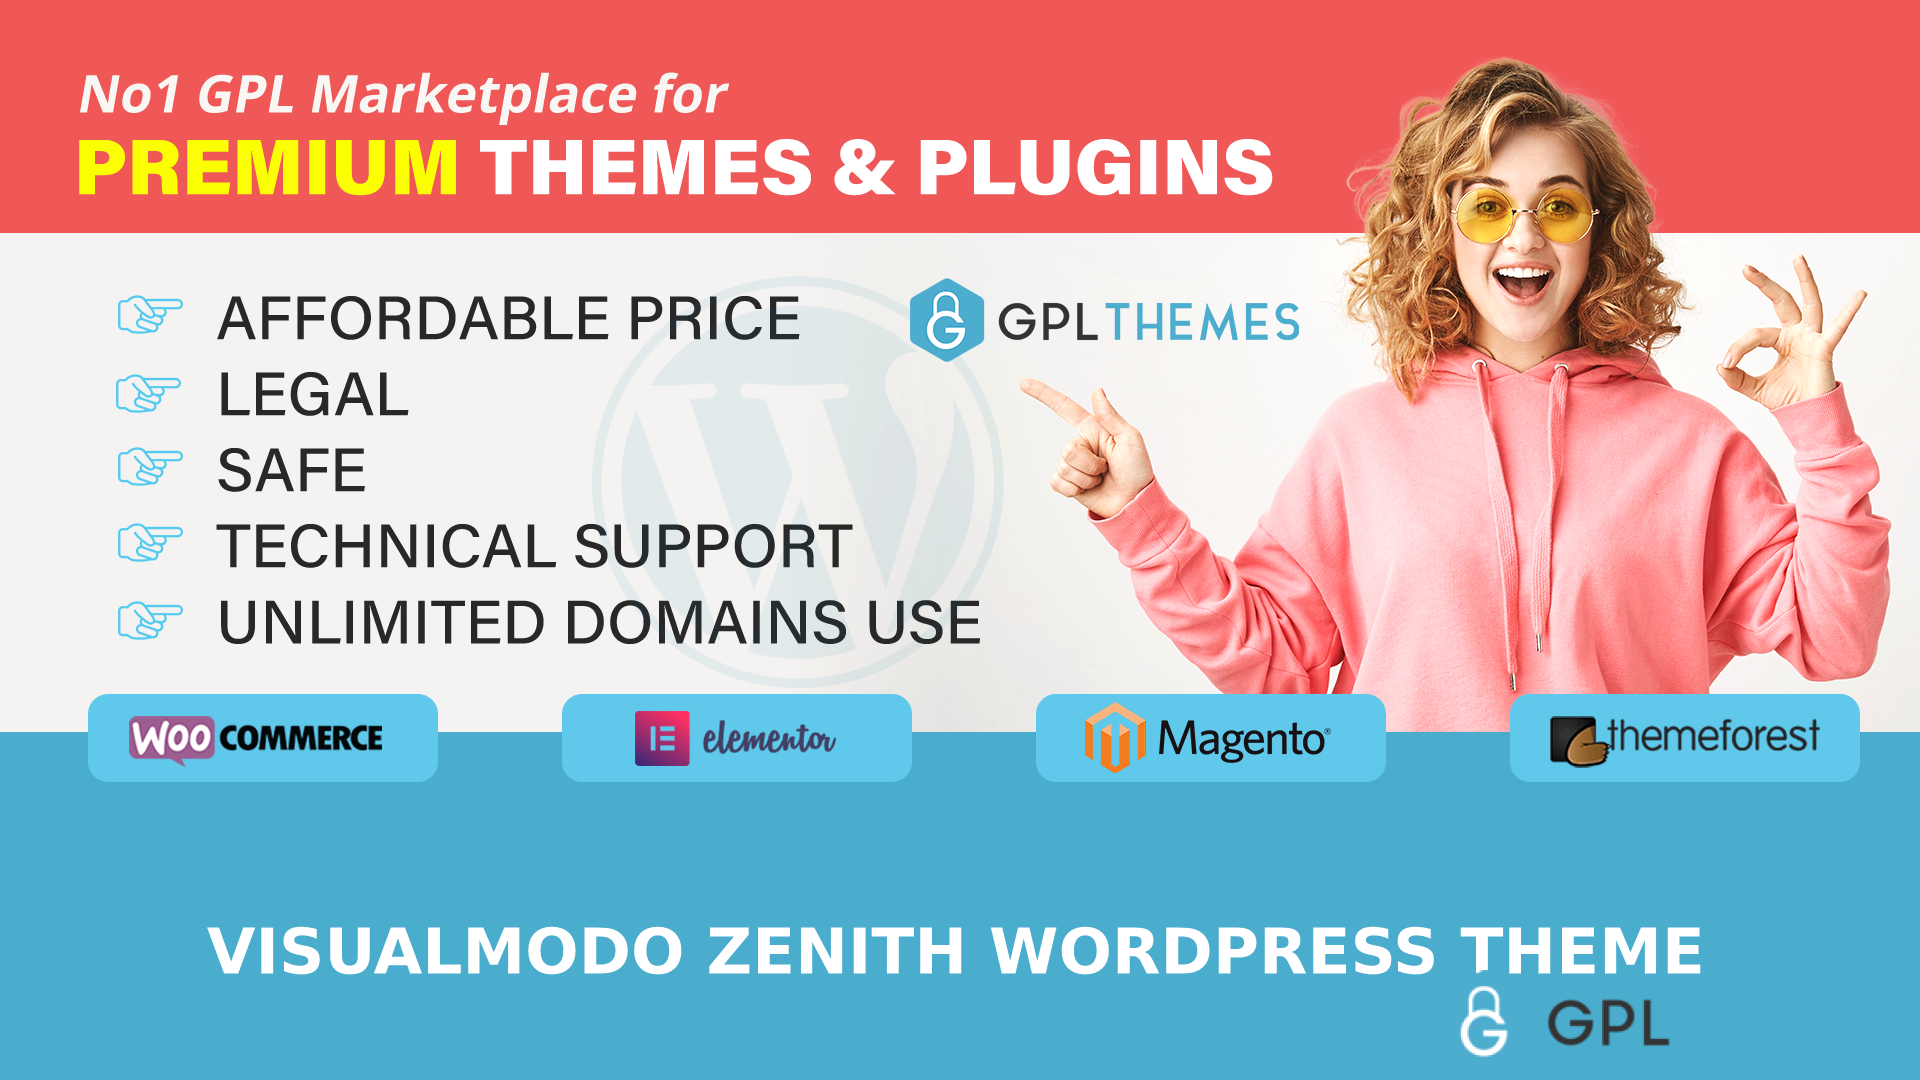 VisualModo Zenith WordPress Theme